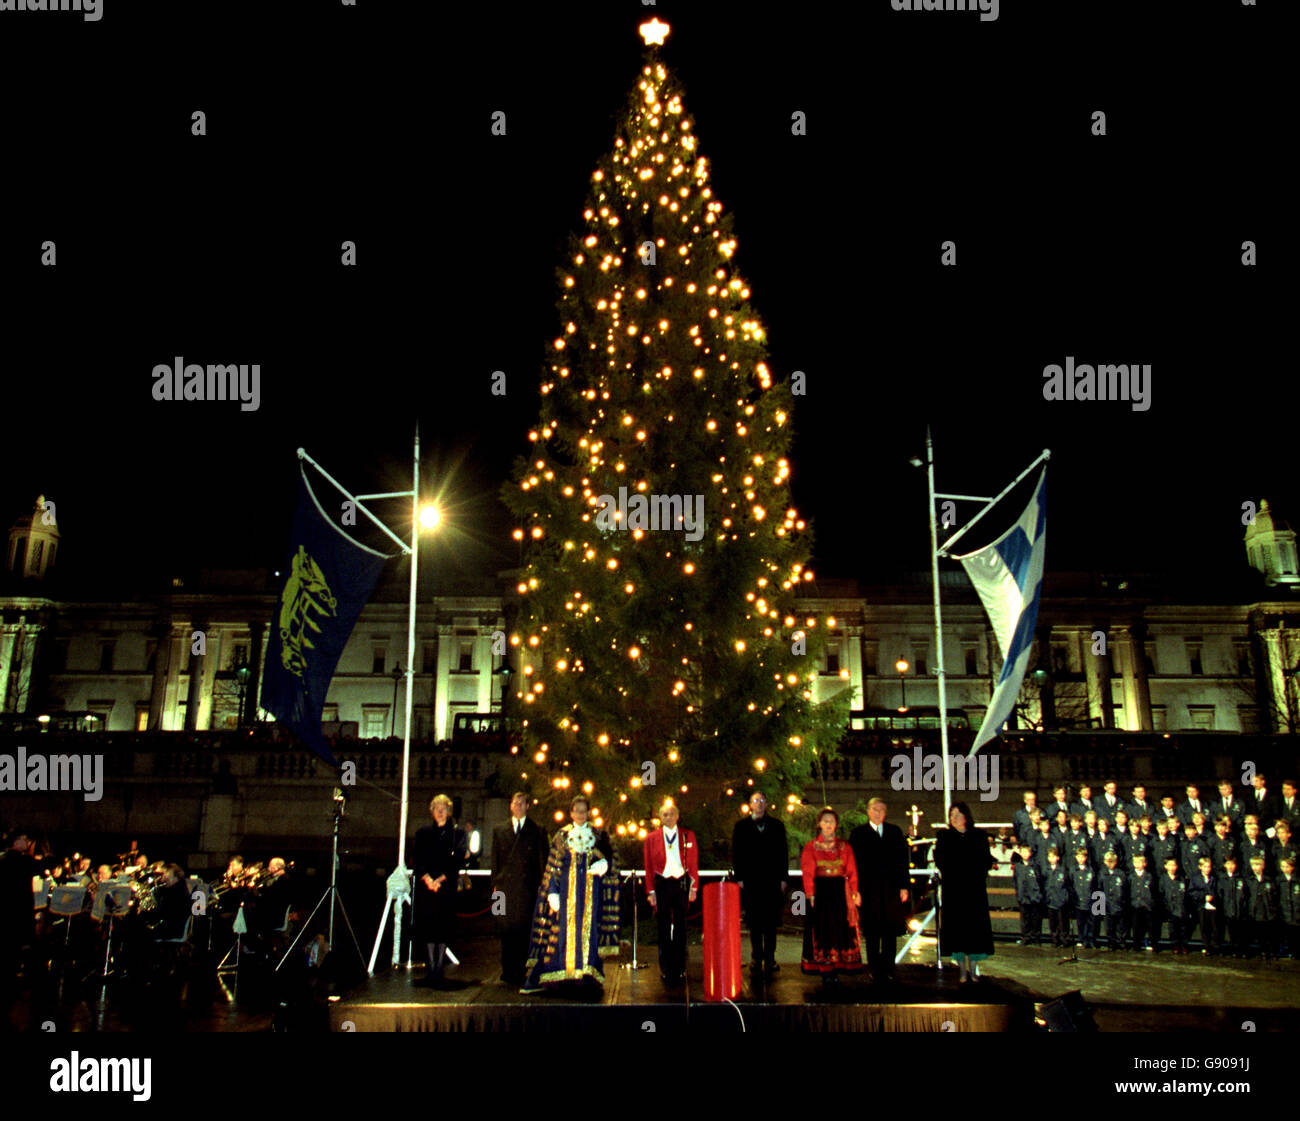 El coro de Solvguttene Boy canta villancicos después de que su Majestad la  Reina Sonja de Noruega (en rojo) encestara las luces del árbol de Navidad  en Trafalgar Square. El árbol noruego